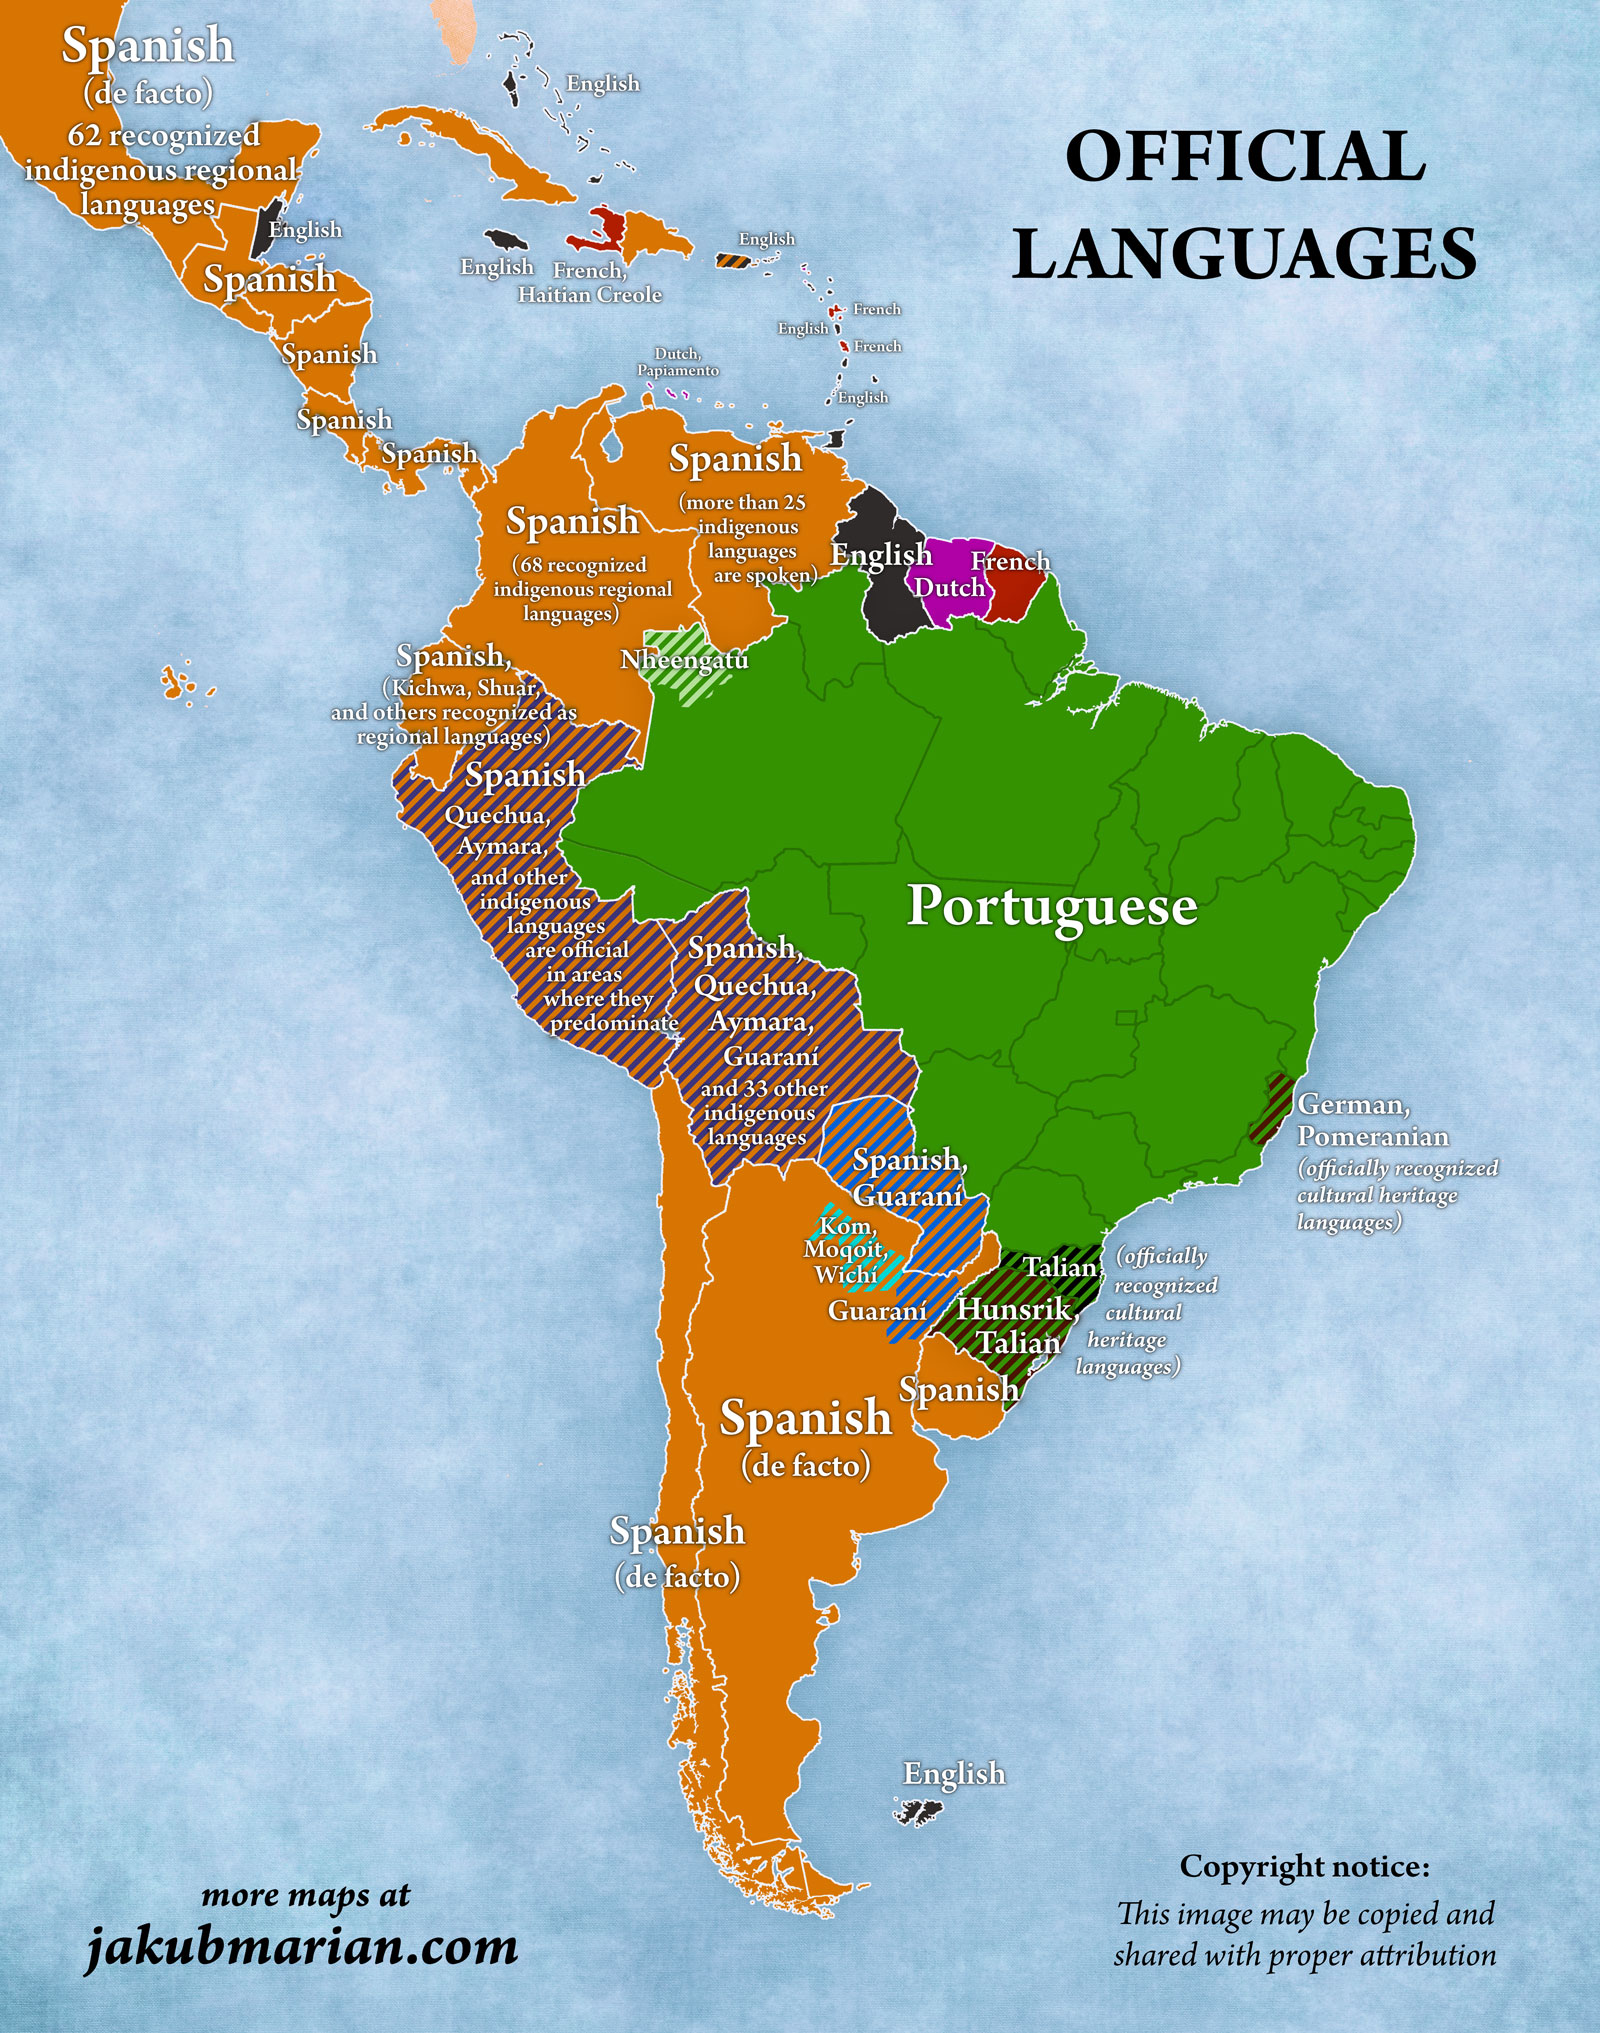 Lenguas oficiales de Latinoamérica y Caribe (2018)